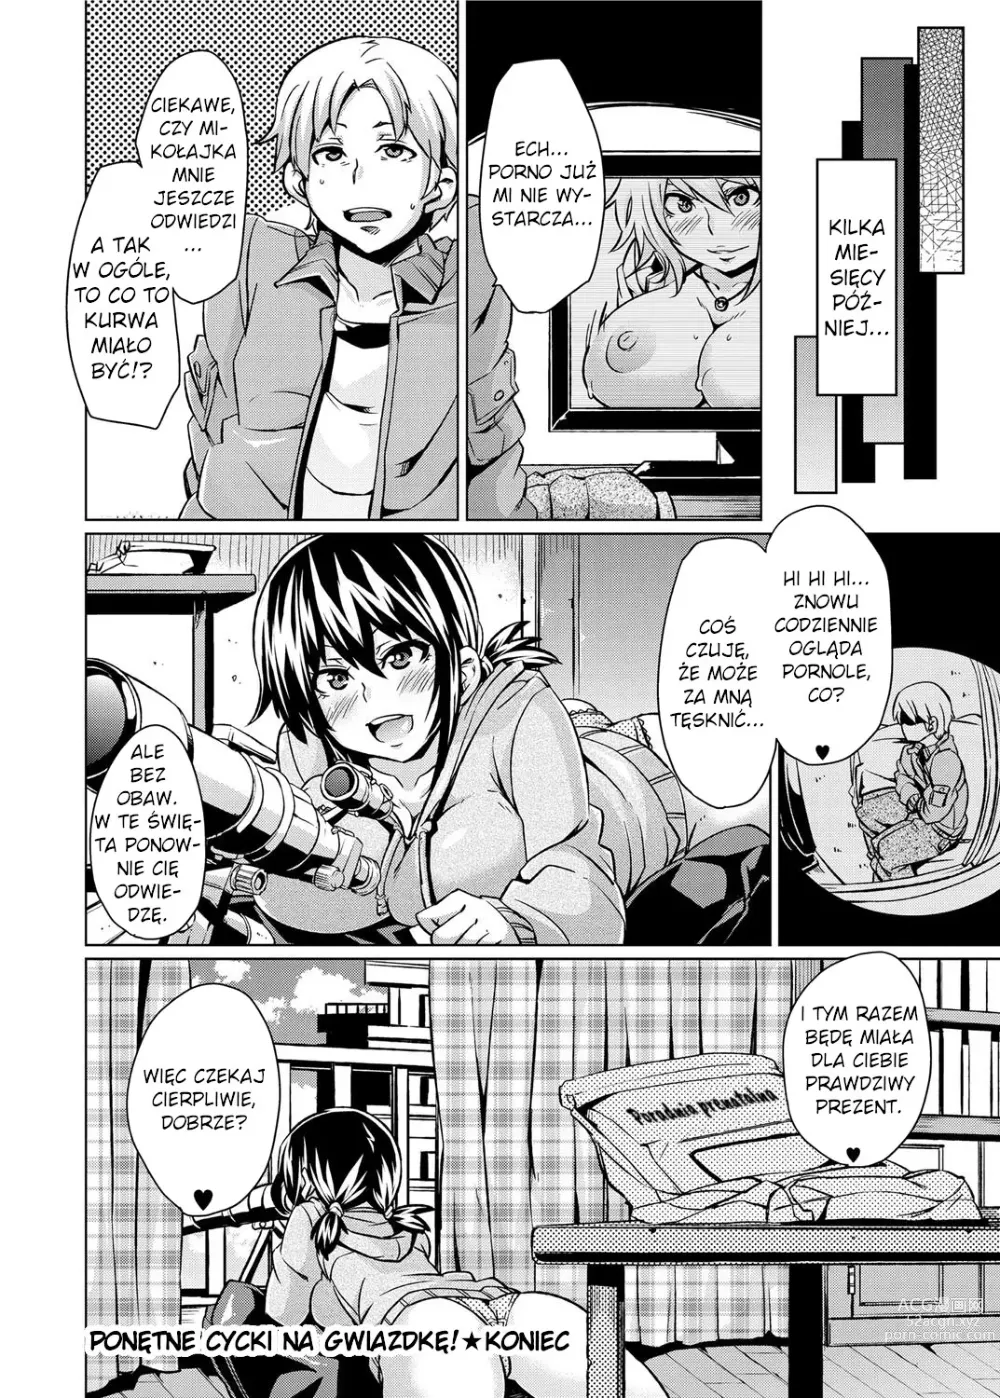 Page 16 of manga Ponętne cycki na gwiazdkę!